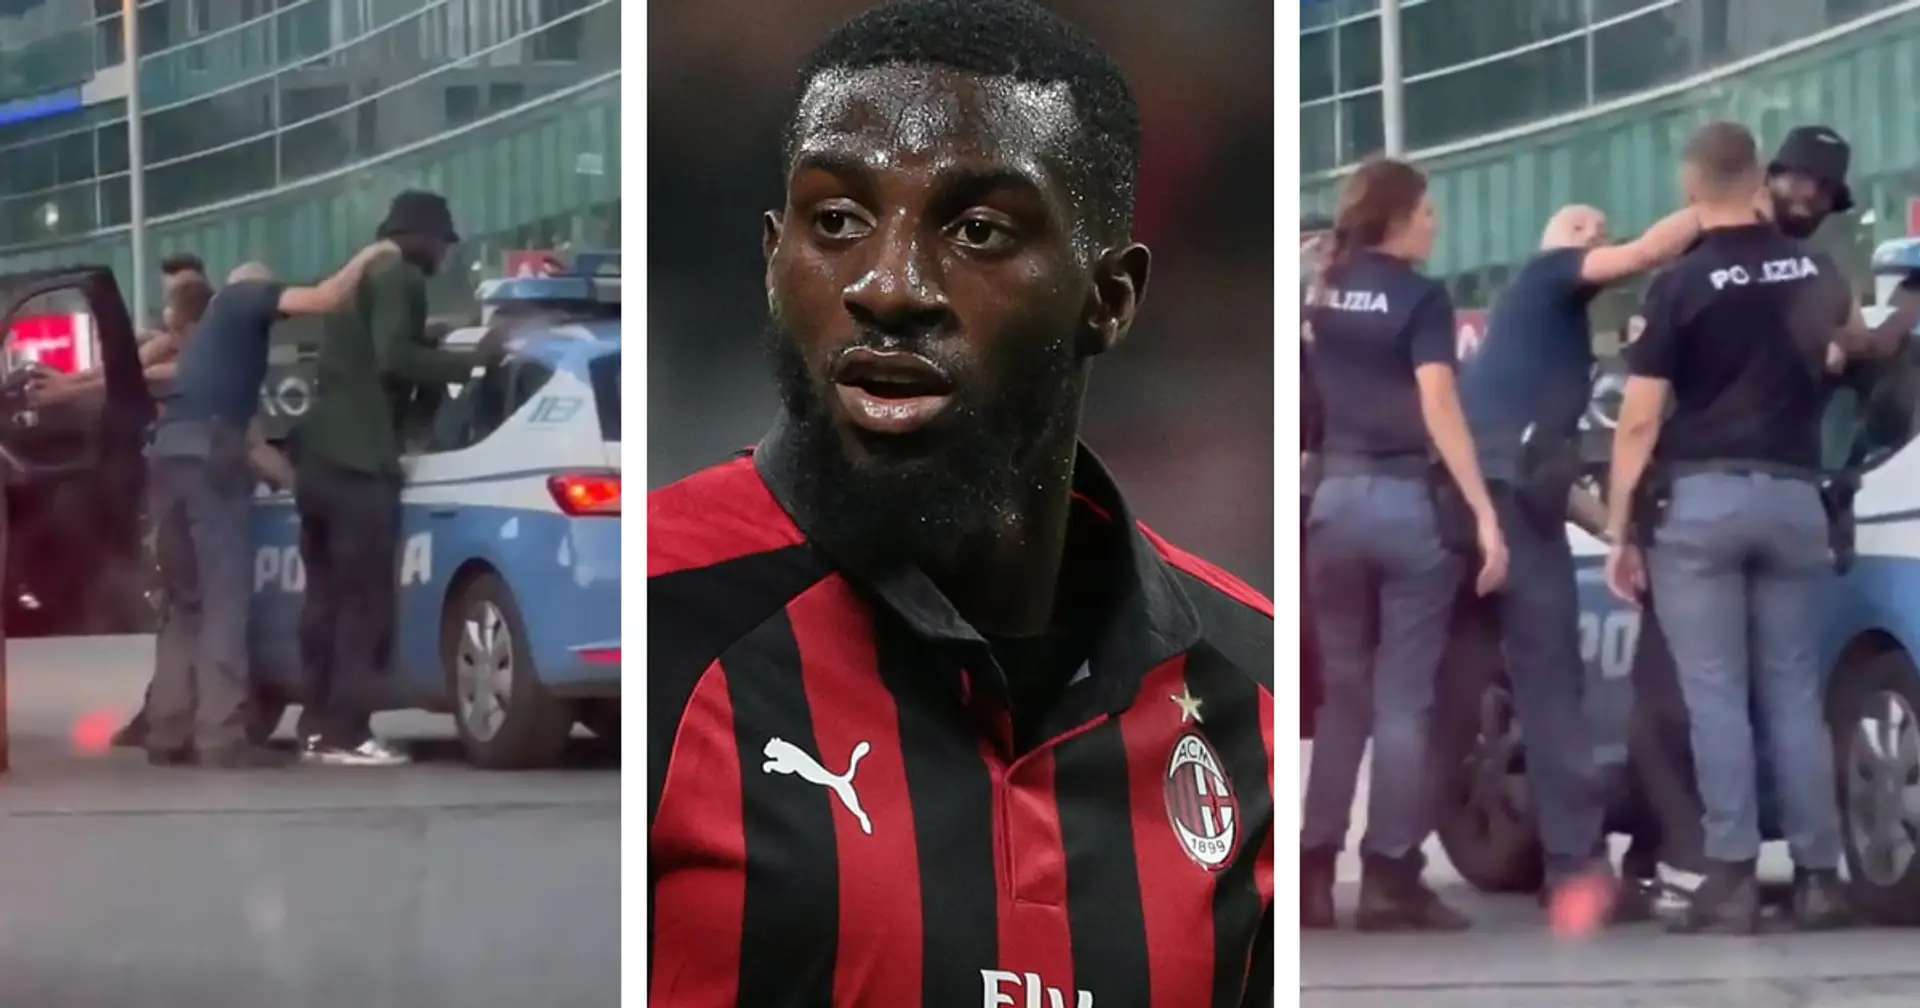 Le milieu de terrain de l'AC Milan Bakayoko arrêté à tort par la police italienne à cause d'une erreur d'identité